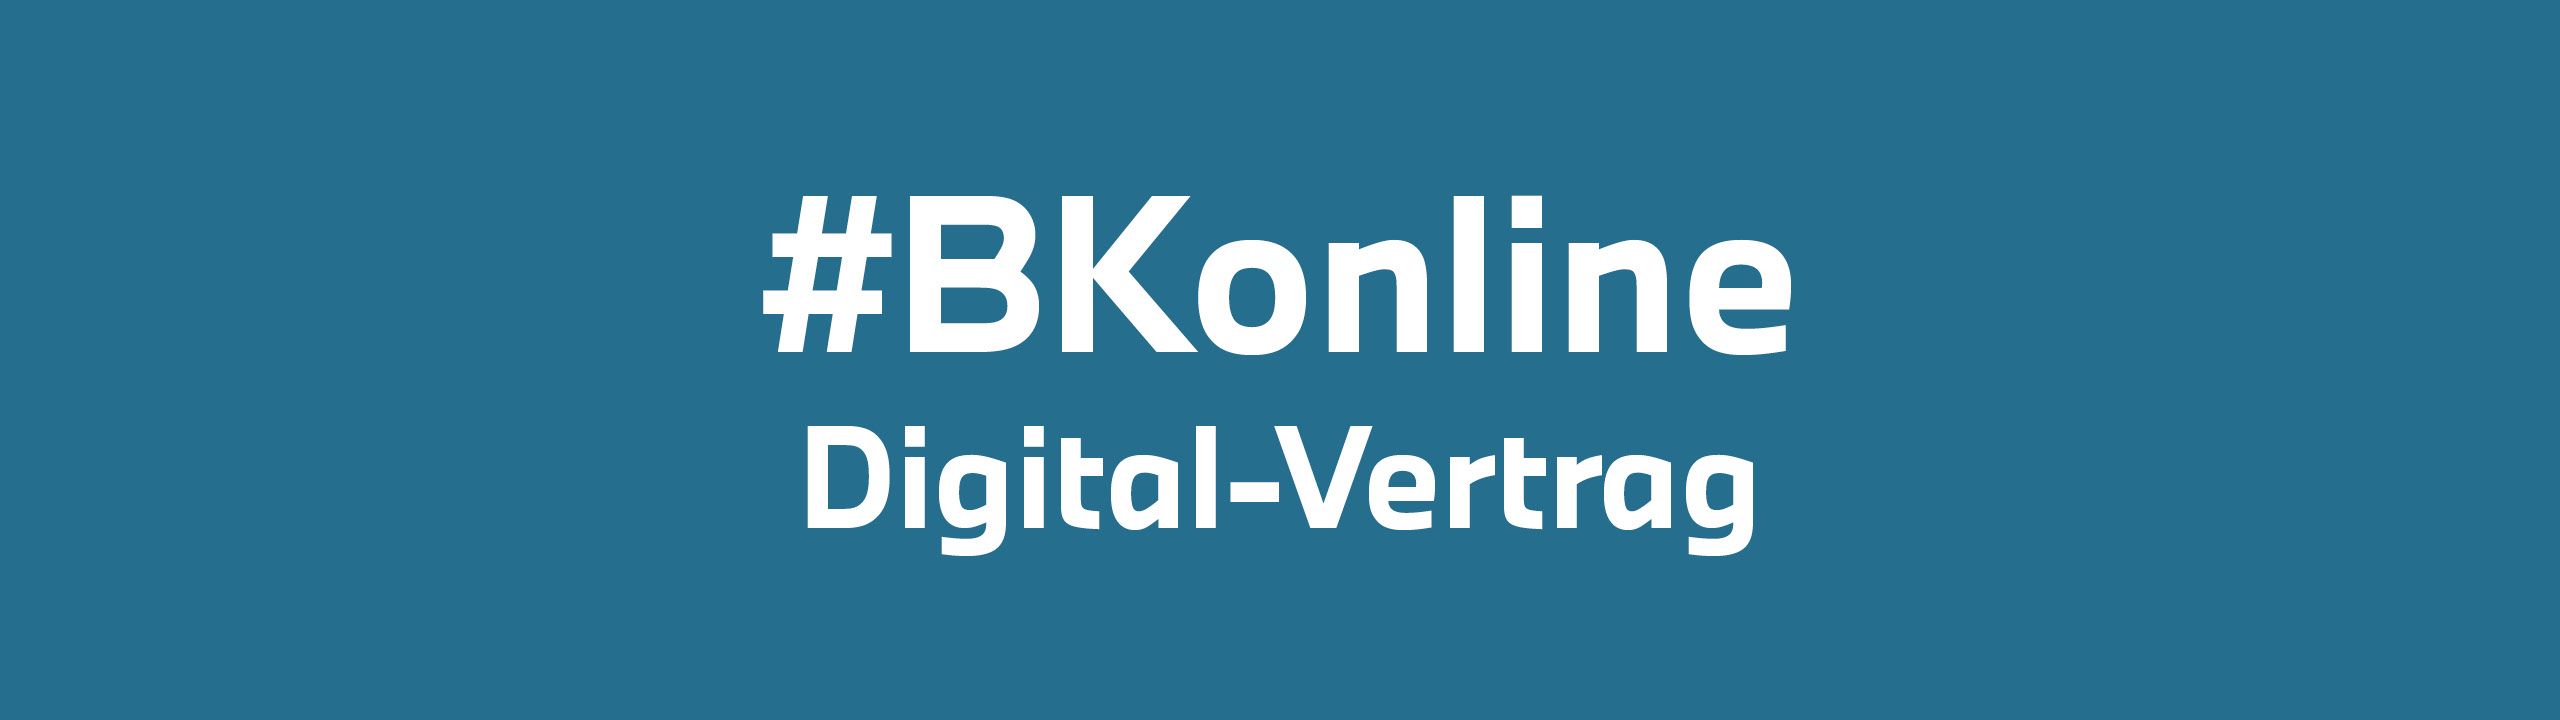 Weiße Schrift auf blauen Untergrund "#BKonline - Digital-Vertrag"